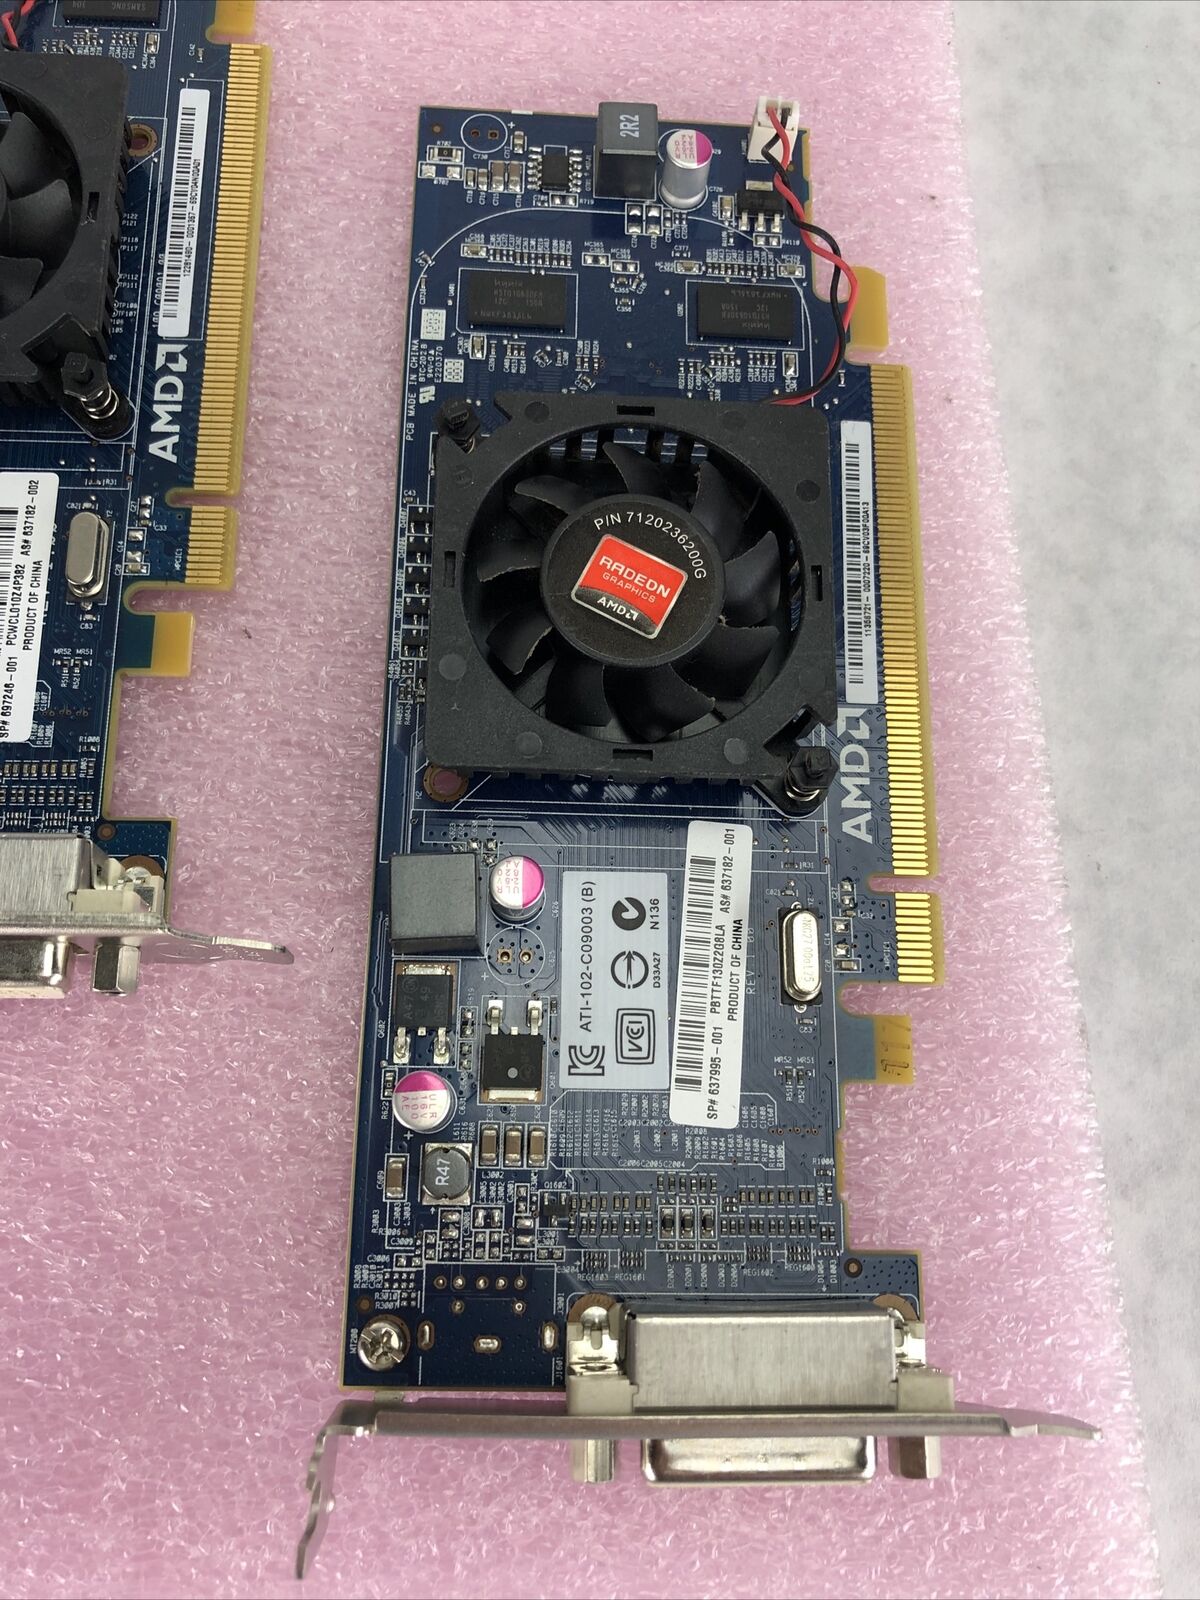 Lot of 5 AMD Radeon ATI-102-C26405 1GB PCI-e DDR3 Video Graphics Card